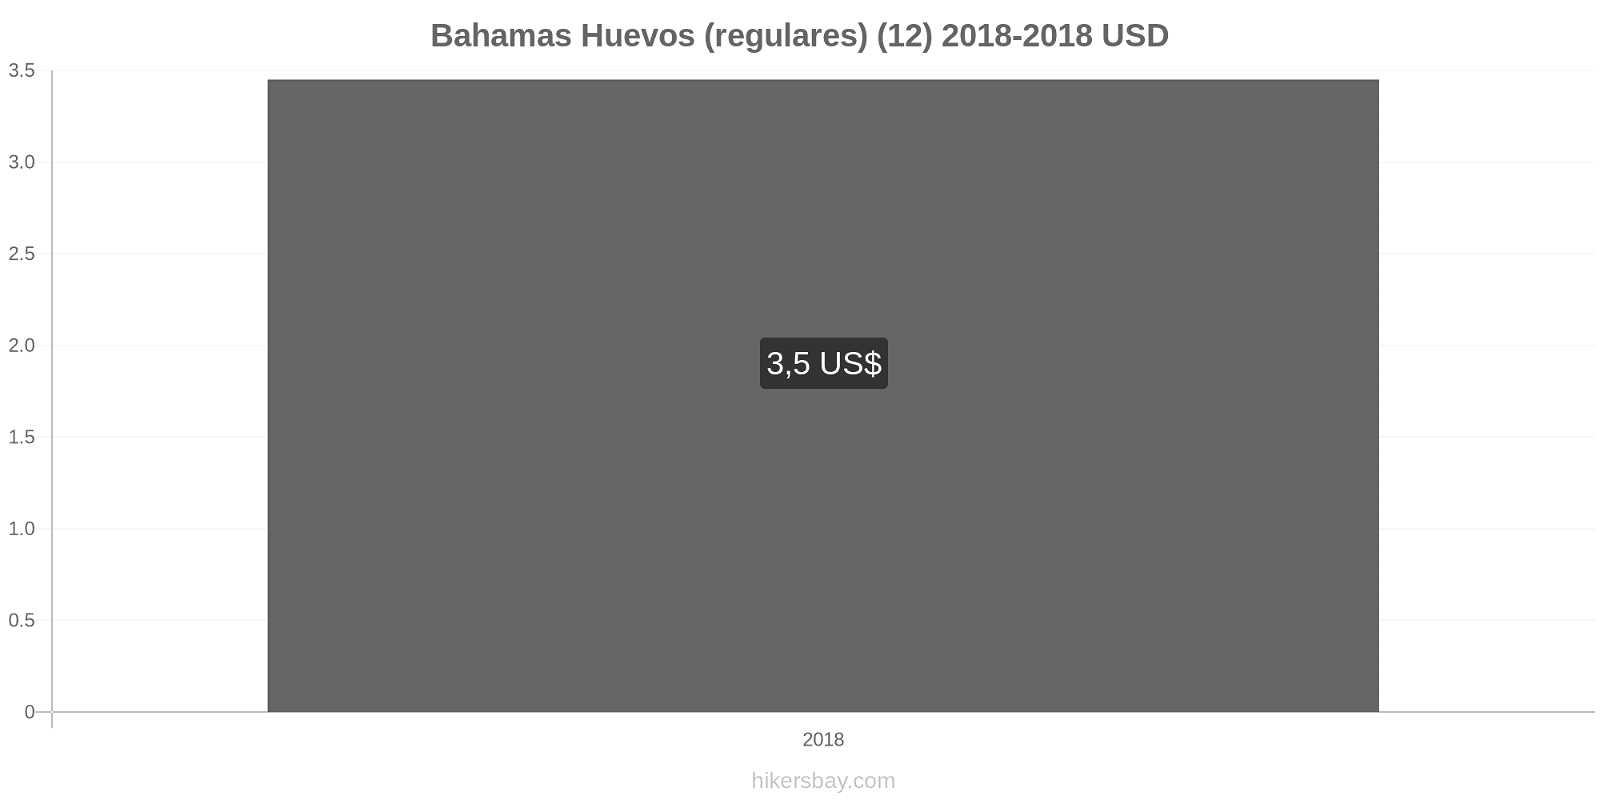 Bahamas cambios de precios Huevos (normales) (12 unidades) hikersbay.com